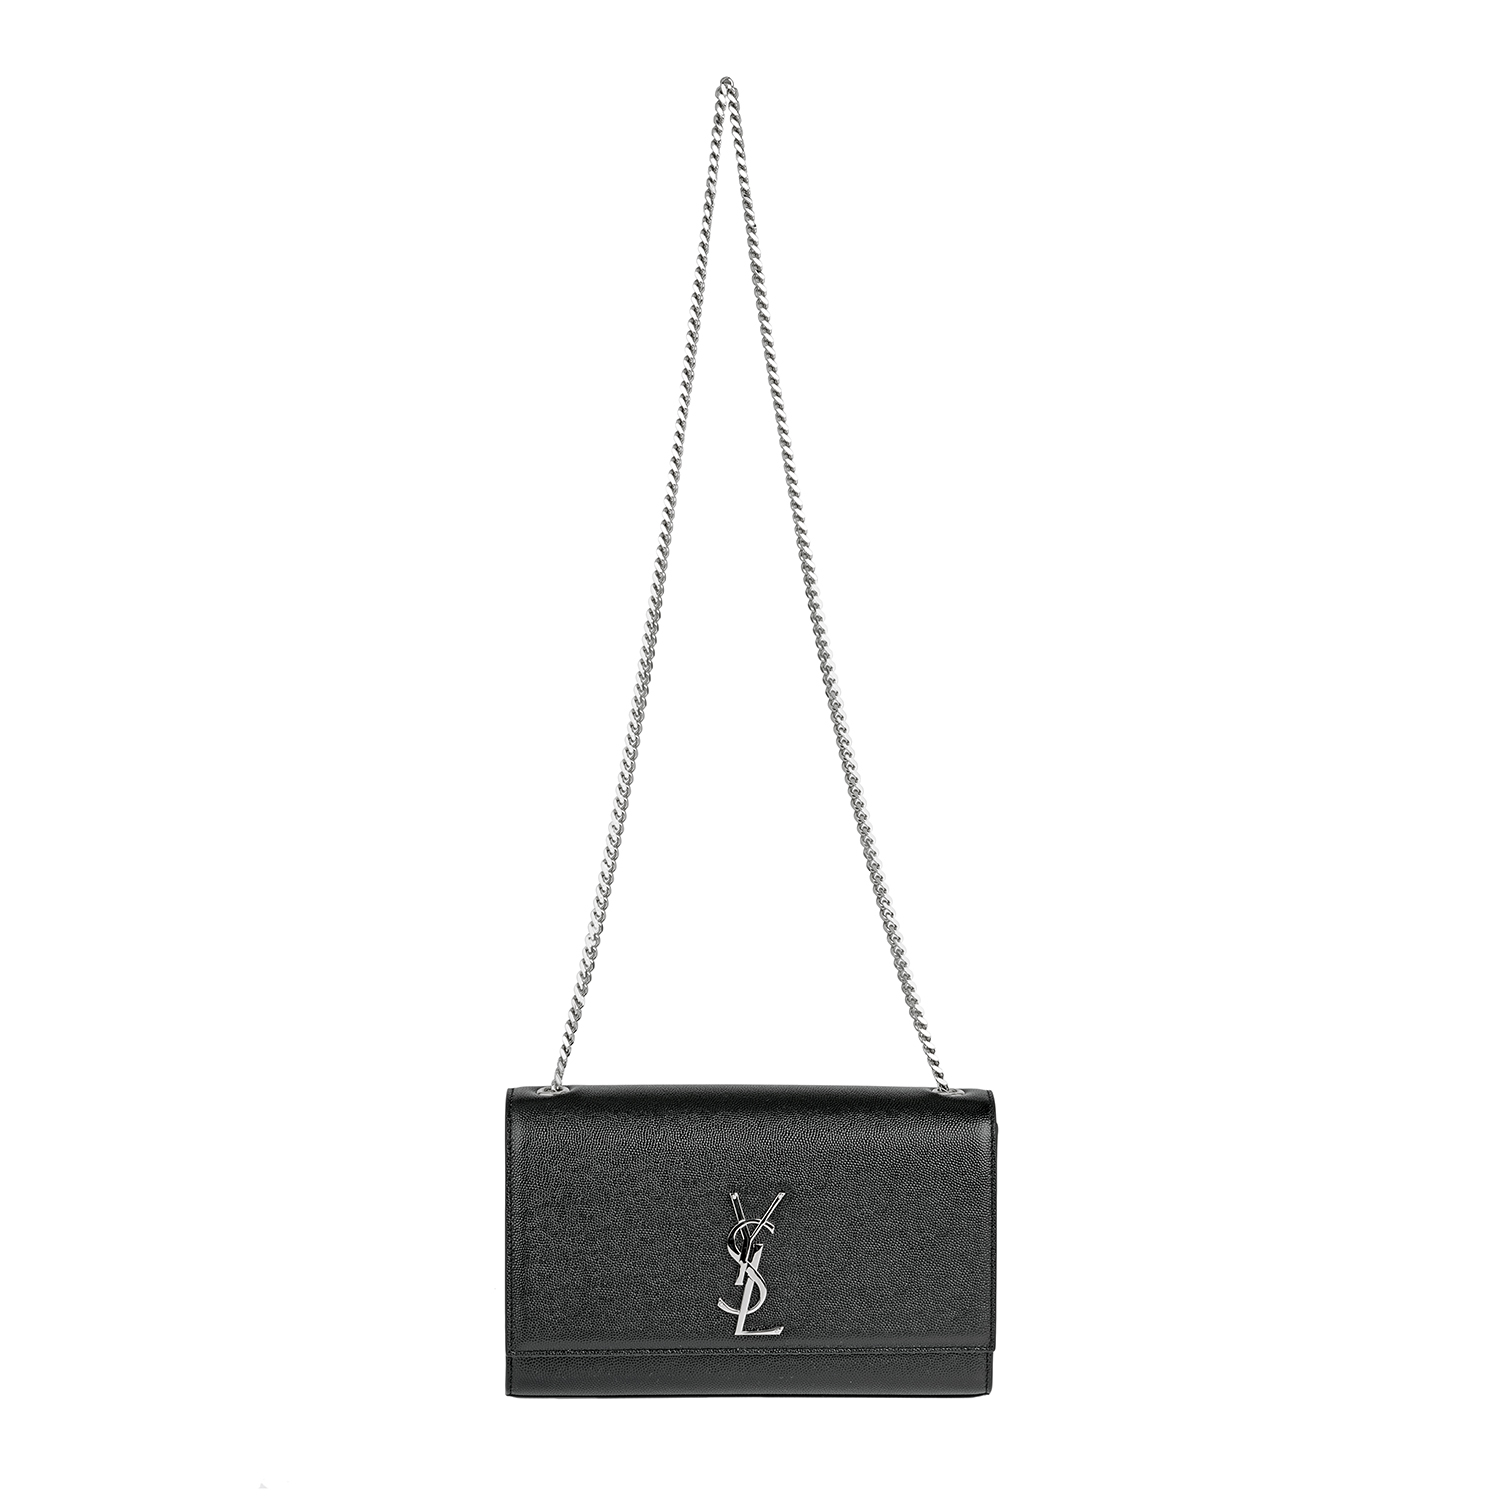 Handbag for rent Yves Saint Laurent Satchel Kate